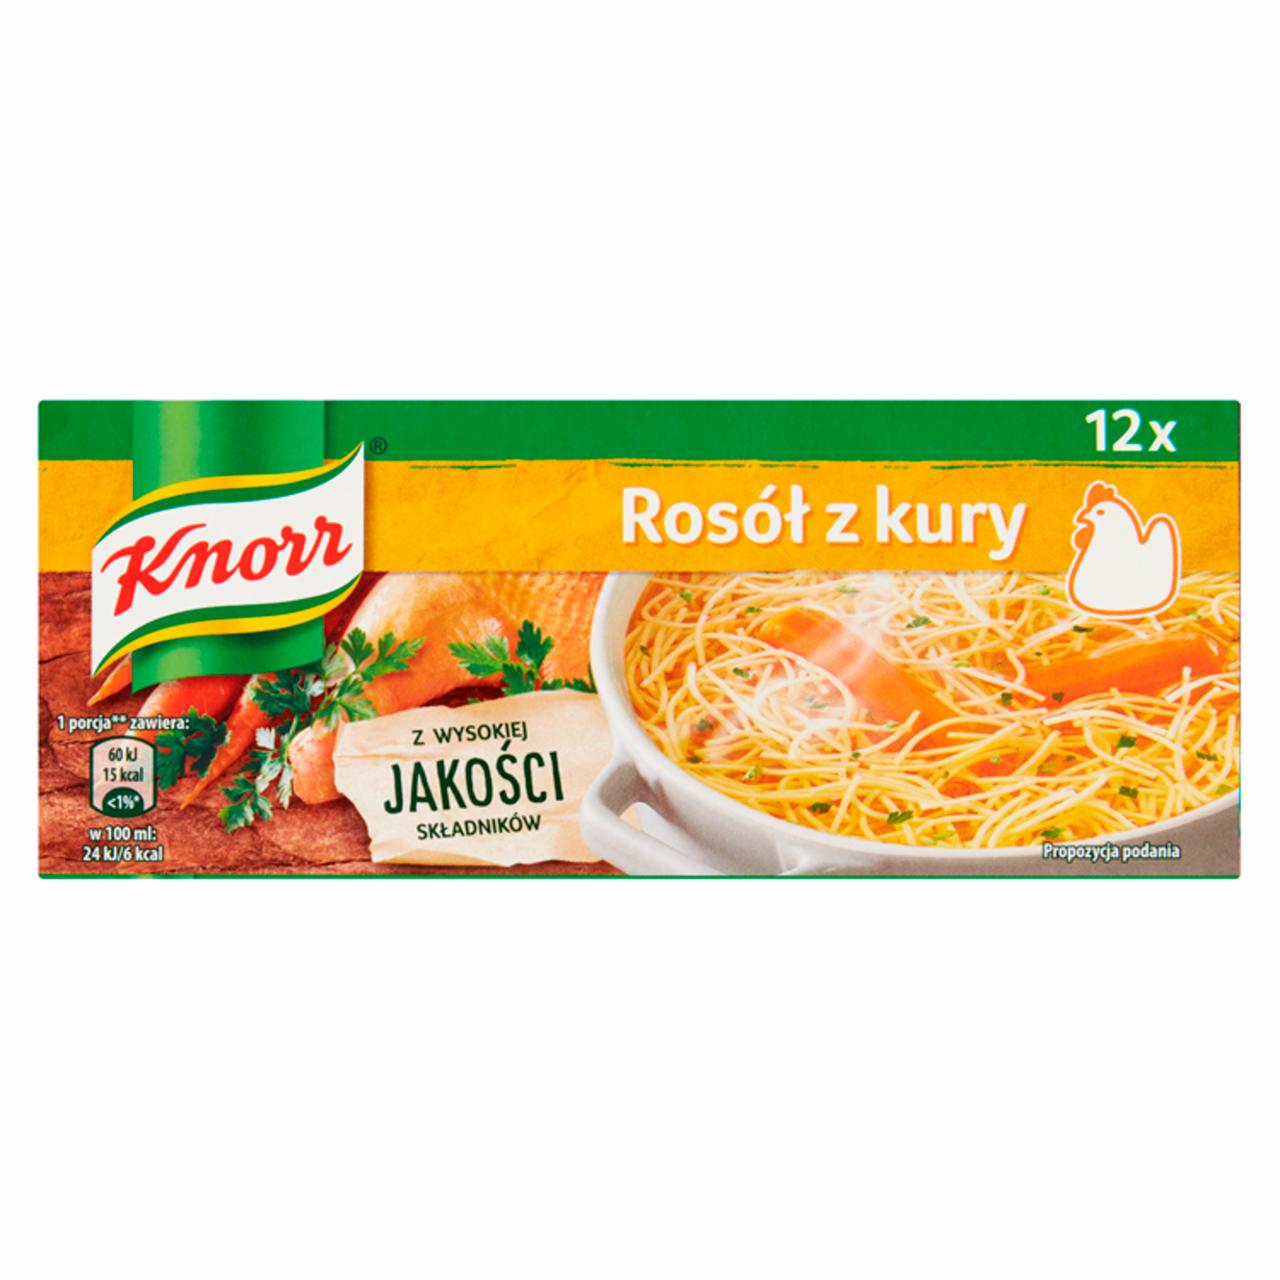 Zdjęcia - Knorr Rosół z kury 120 g (12 x 10 g)